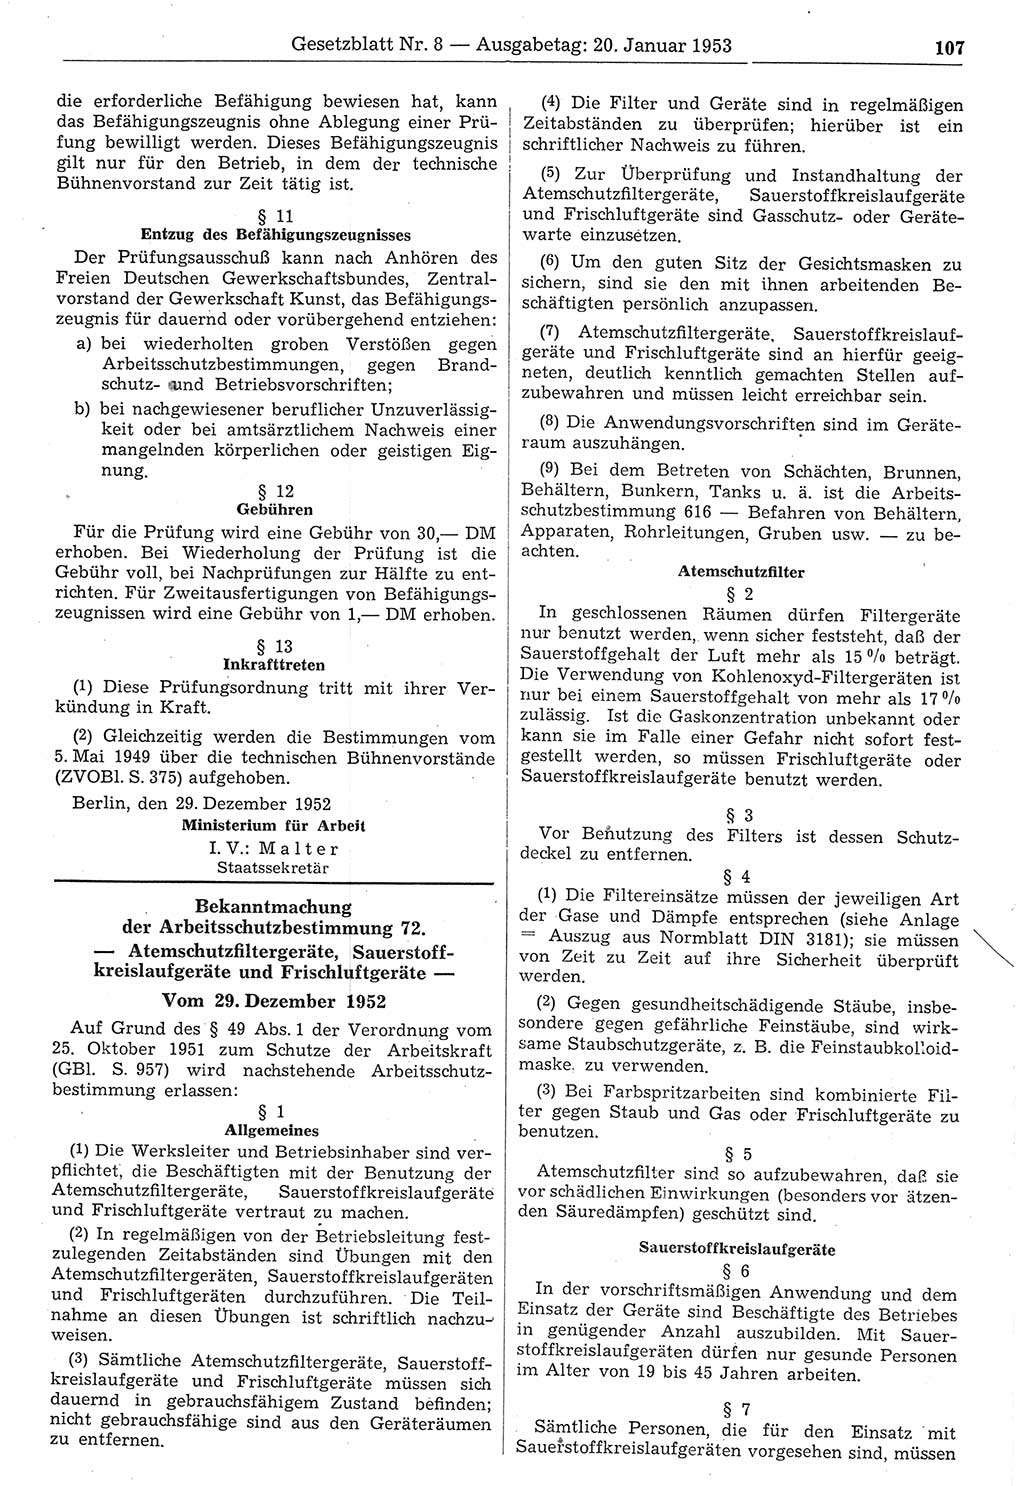 Gesetzblatt (GBl.) der Deutschen Demokratischen Republik (DDR) 1953, Seite 107 (GBl. DDR 1953, S. 107)